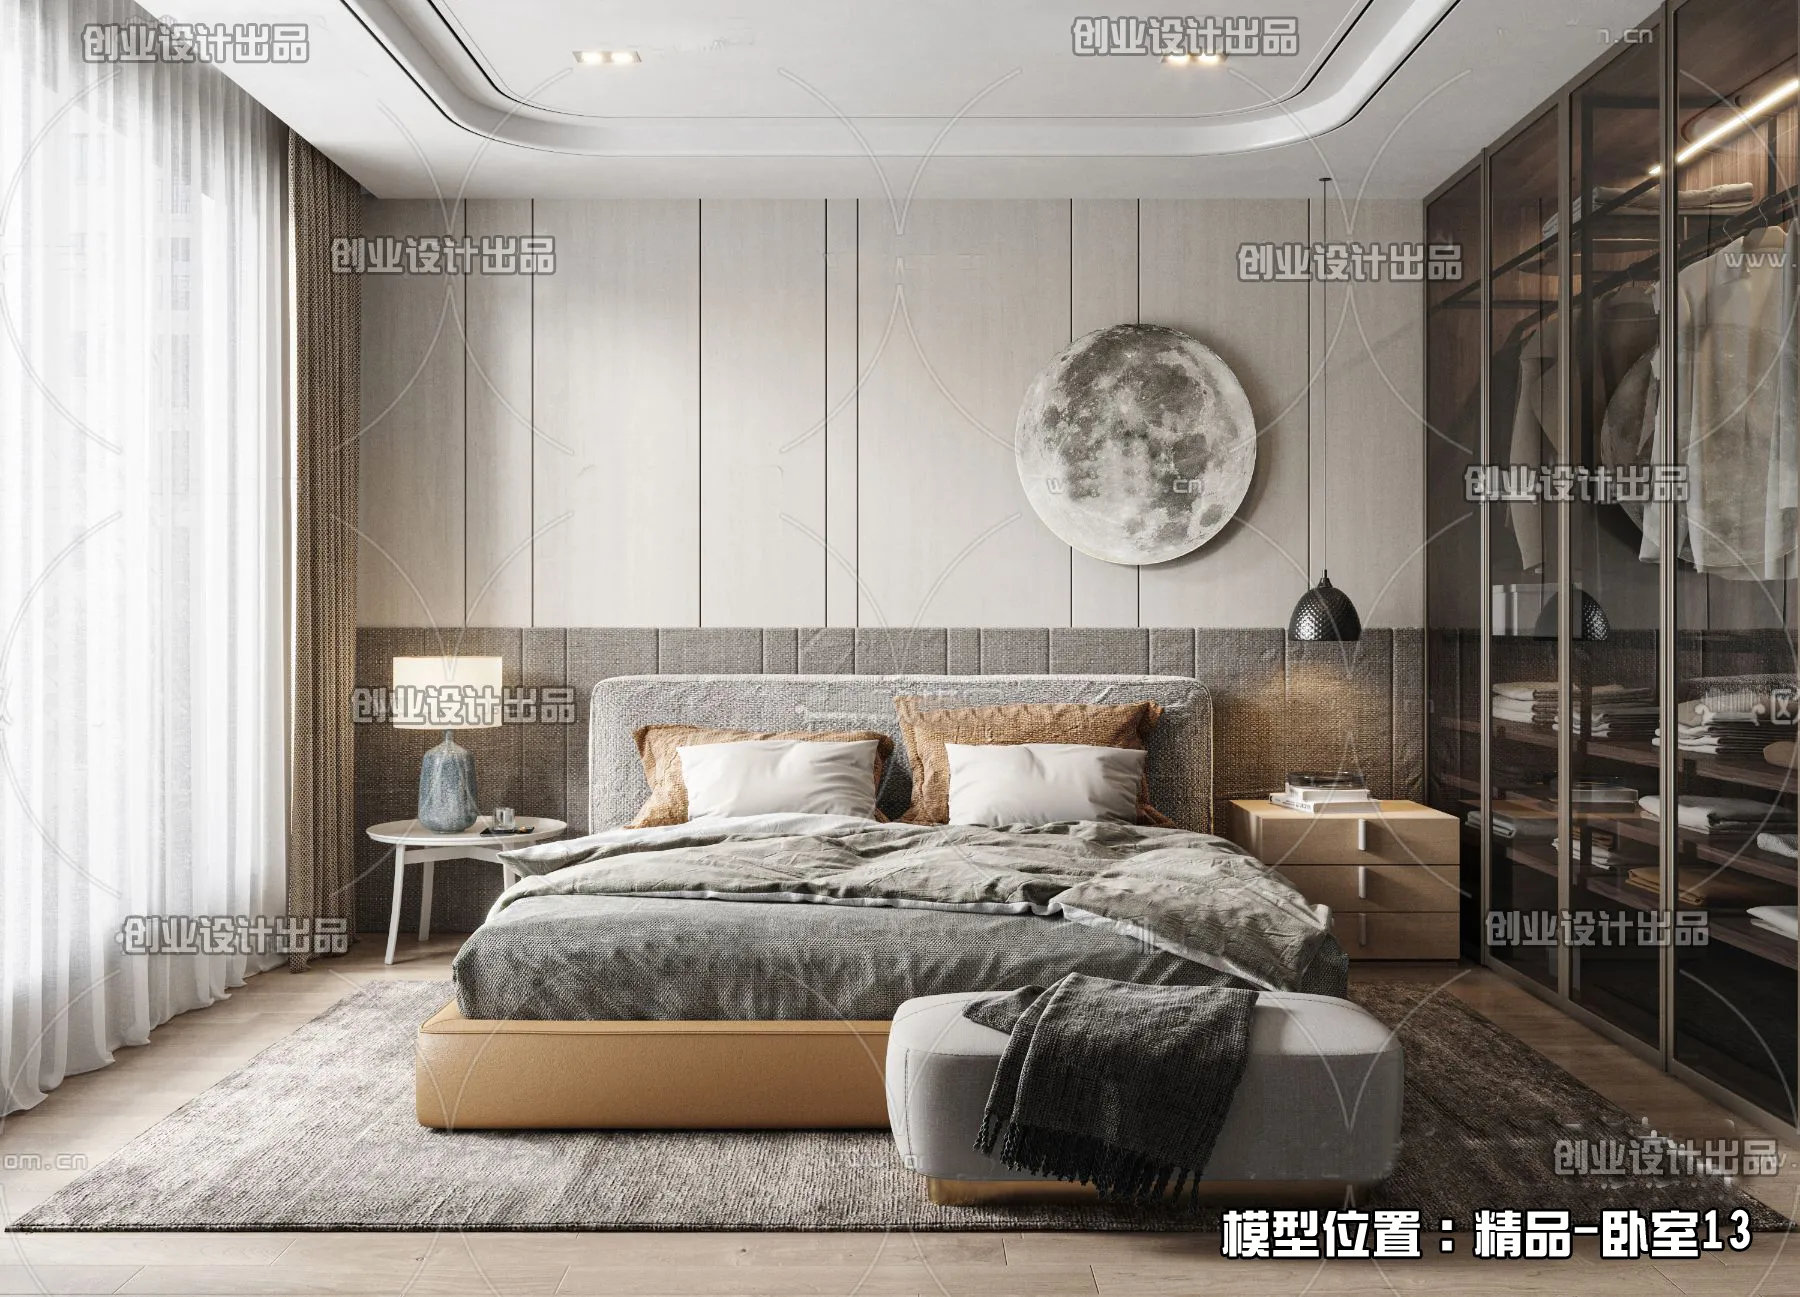 Bedroom – Modern Interior Design – 3D Models – 088